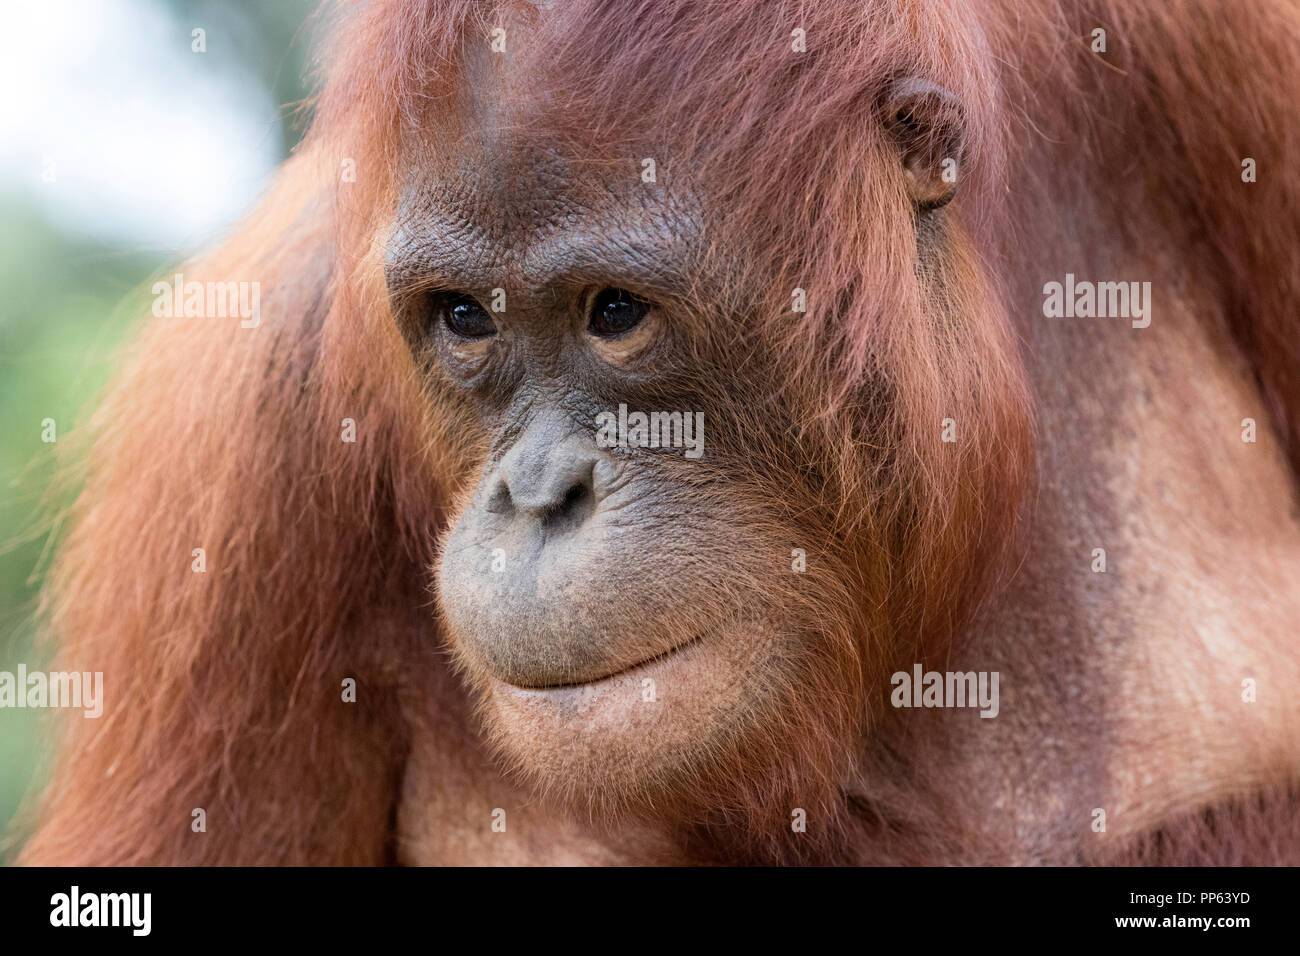 Les orangs-outans (Pongo pygmaeus), Bornéo, Indonésie. Banque D'Images